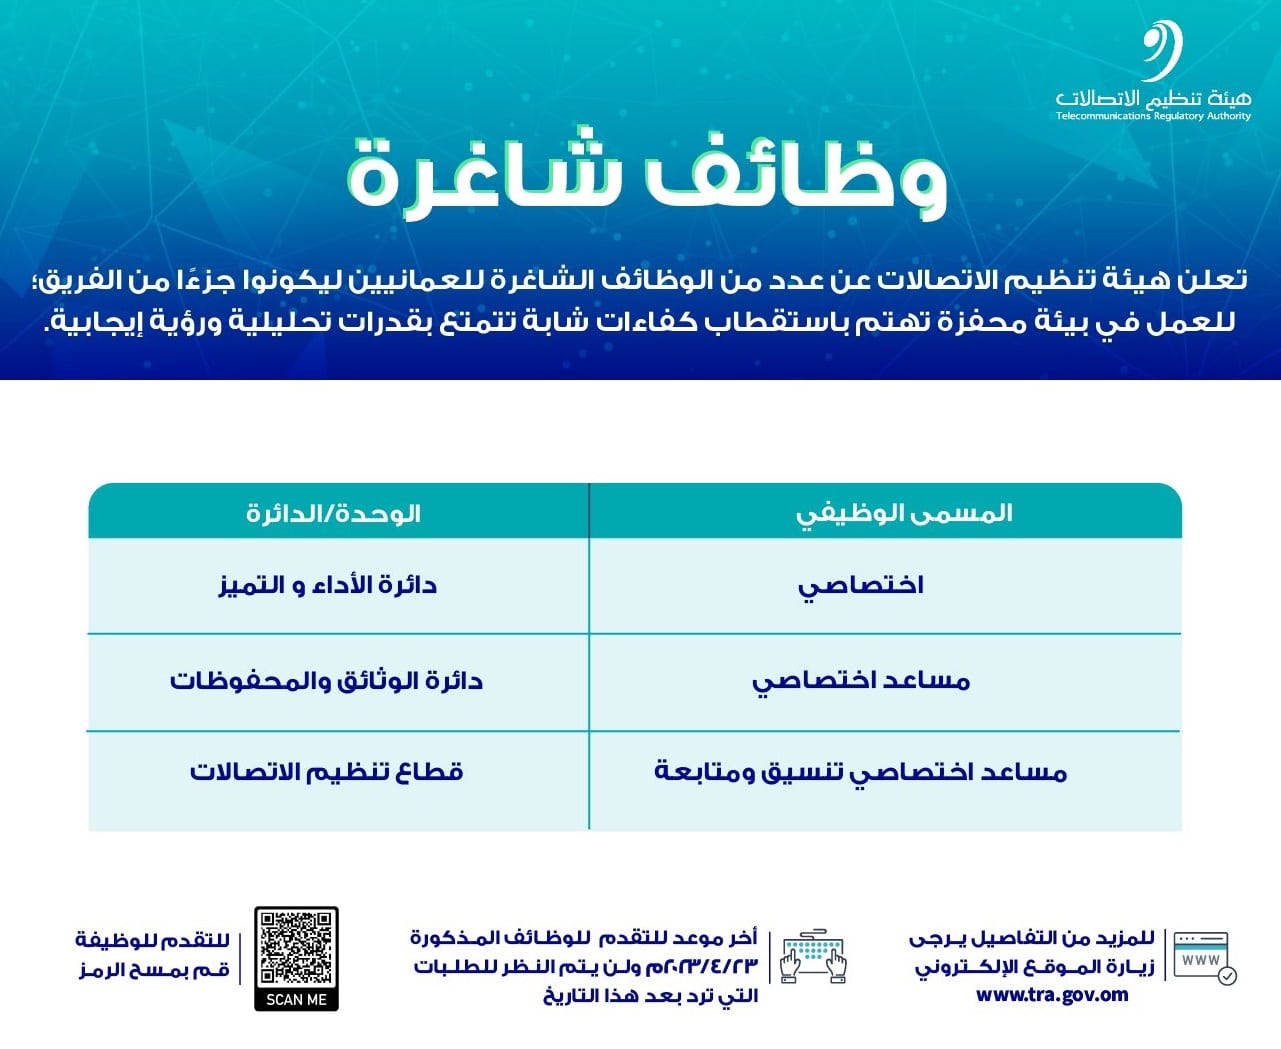 هيئة تنظيم الإتصالات في سلطنة عمان توفر وظائف شاغرة برواتب ومزايا عالية لجميع الجنسيات